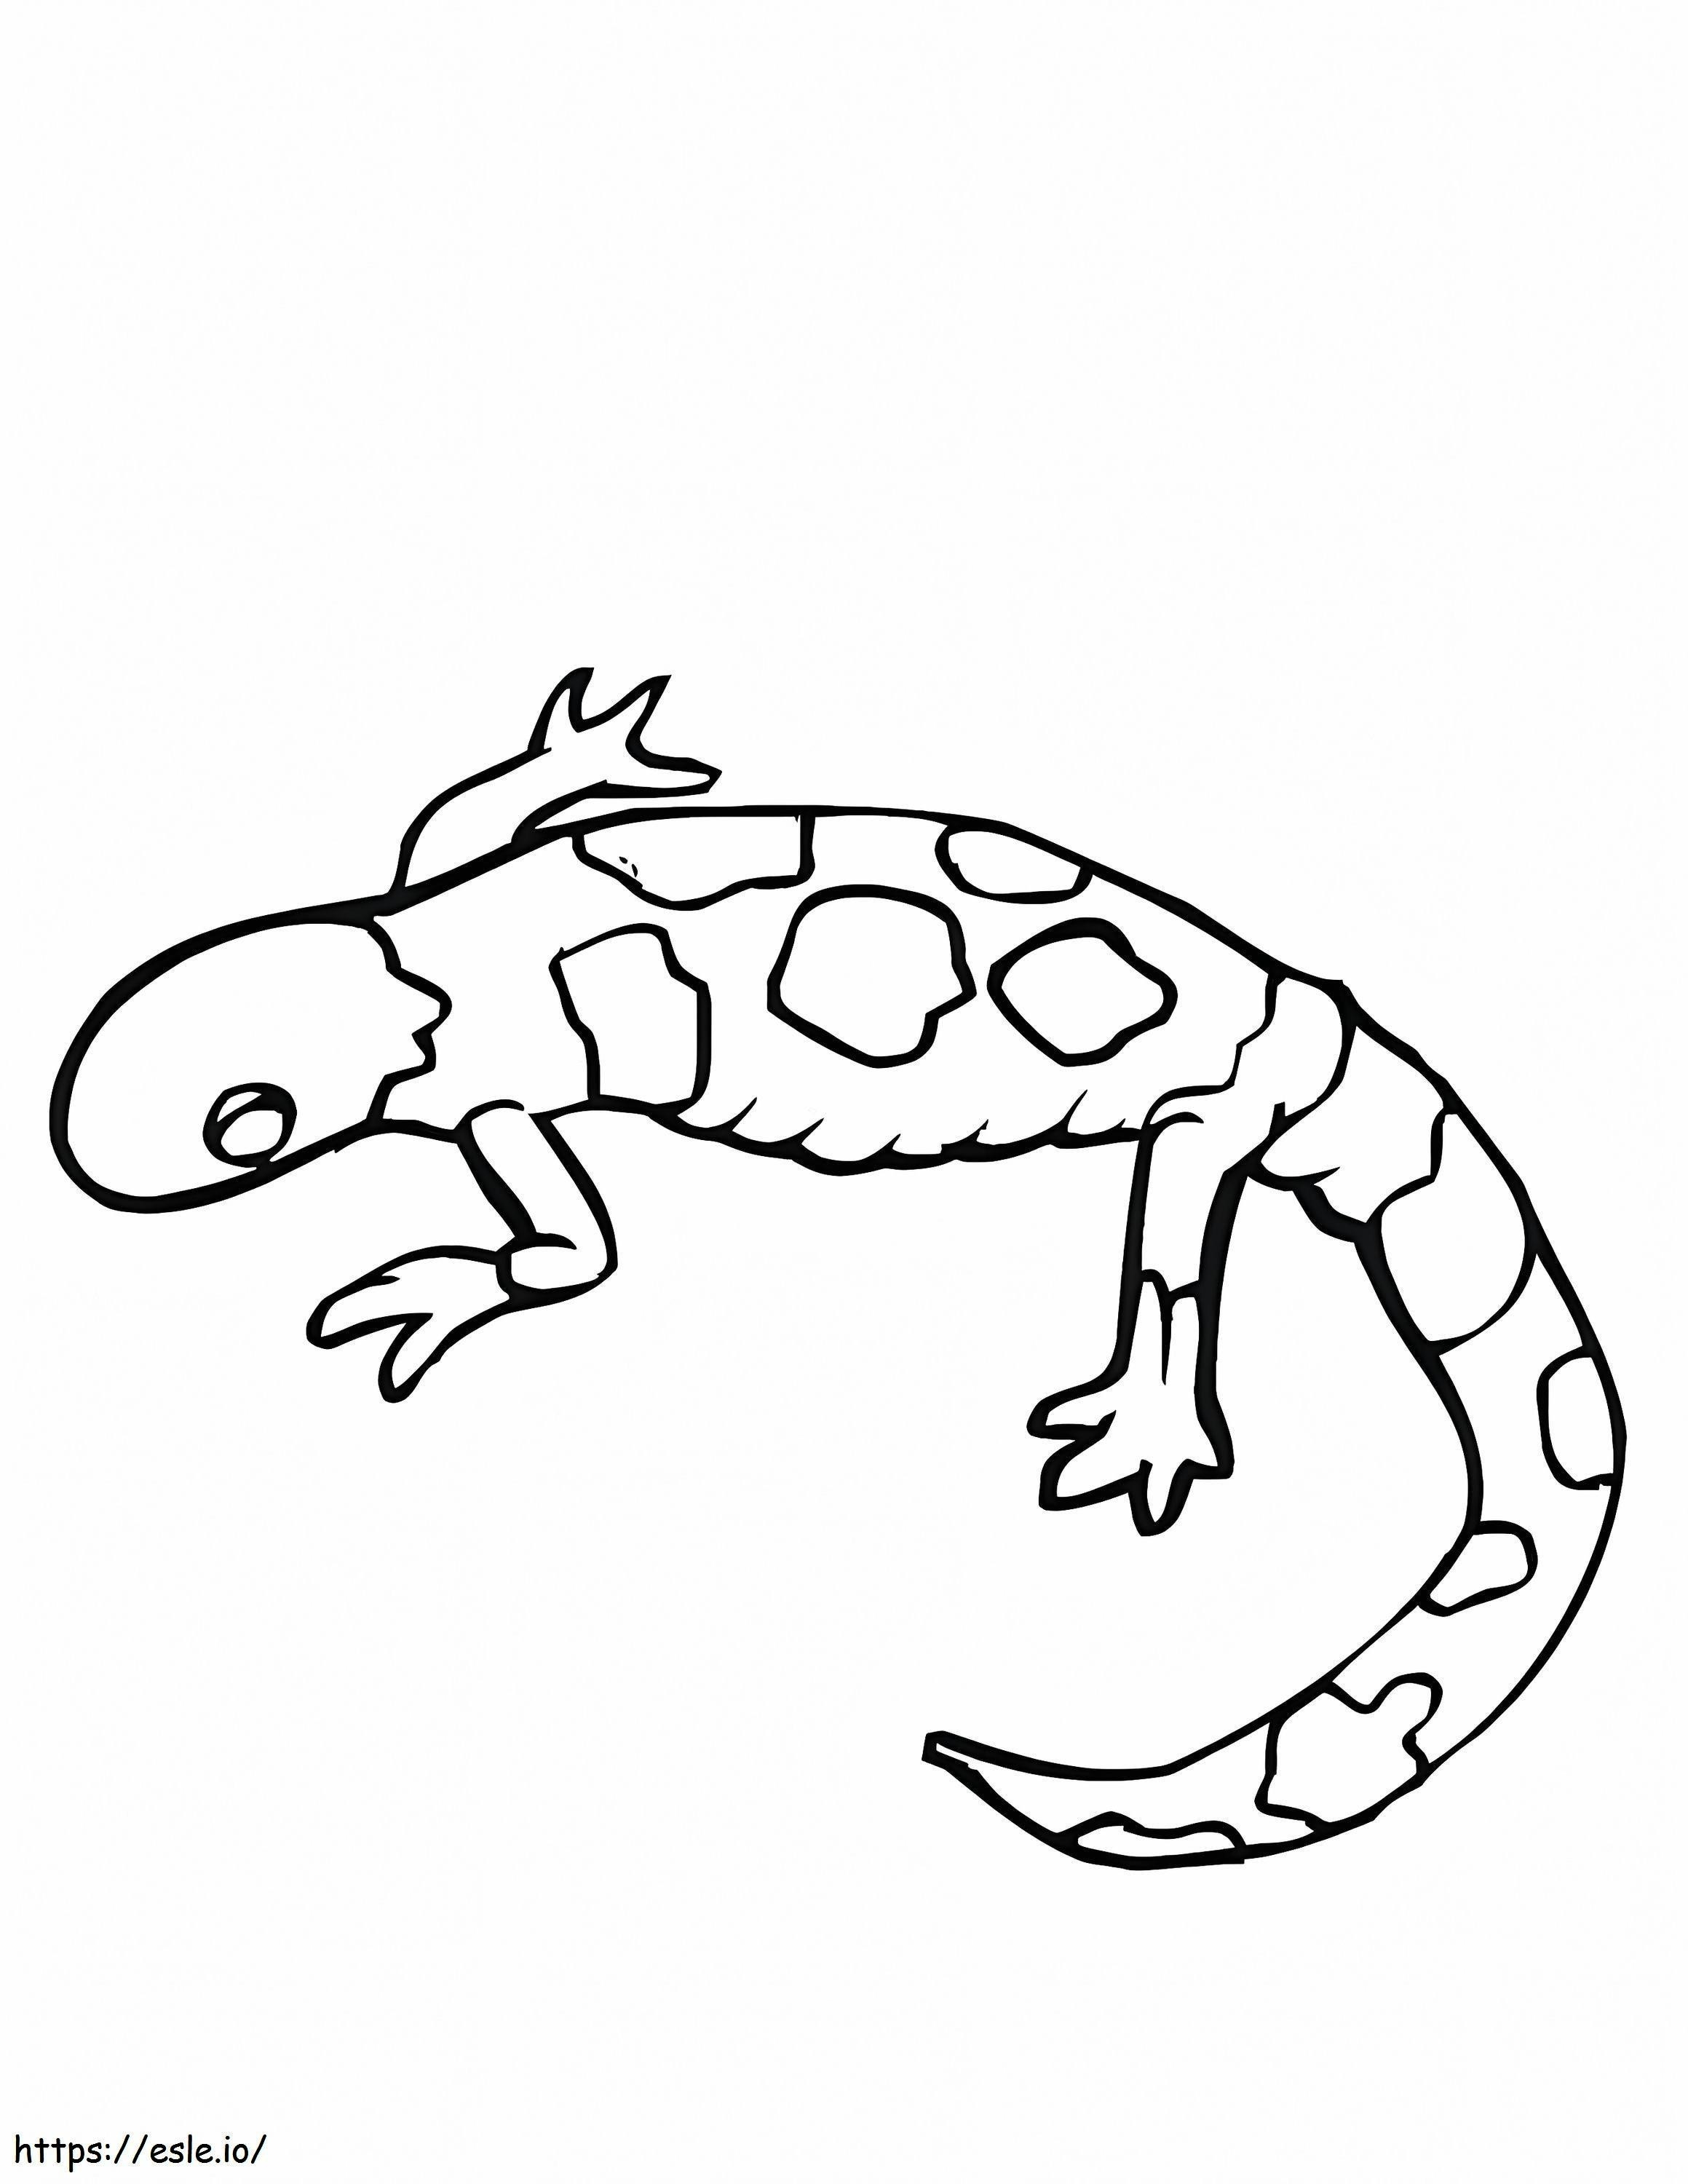 Imagens de lagartixa grátis para colorir